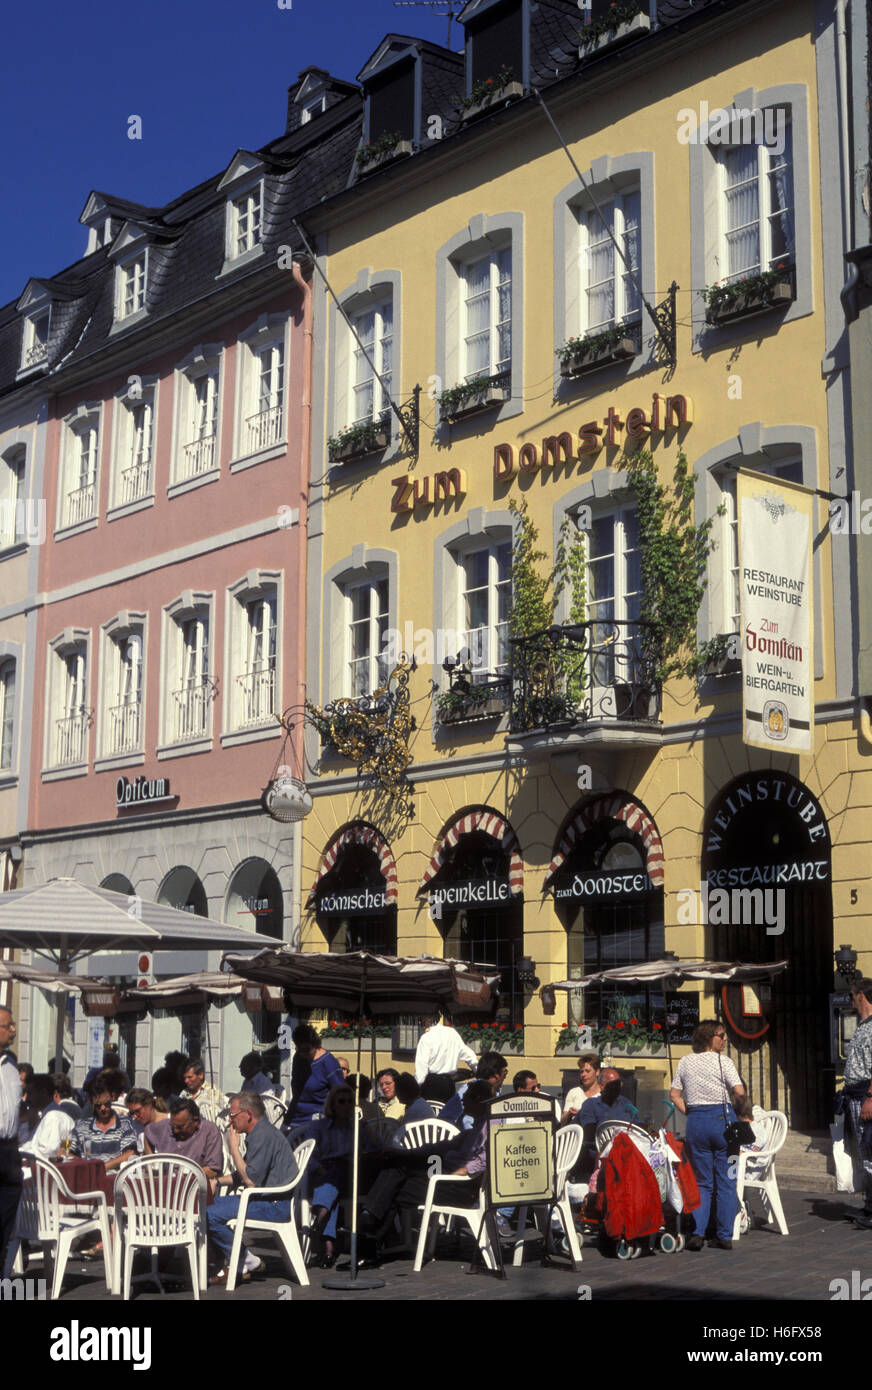 Germania, Treviri, ristorante Zum Domstein presso la piazza principale del mercato. Foto Stock